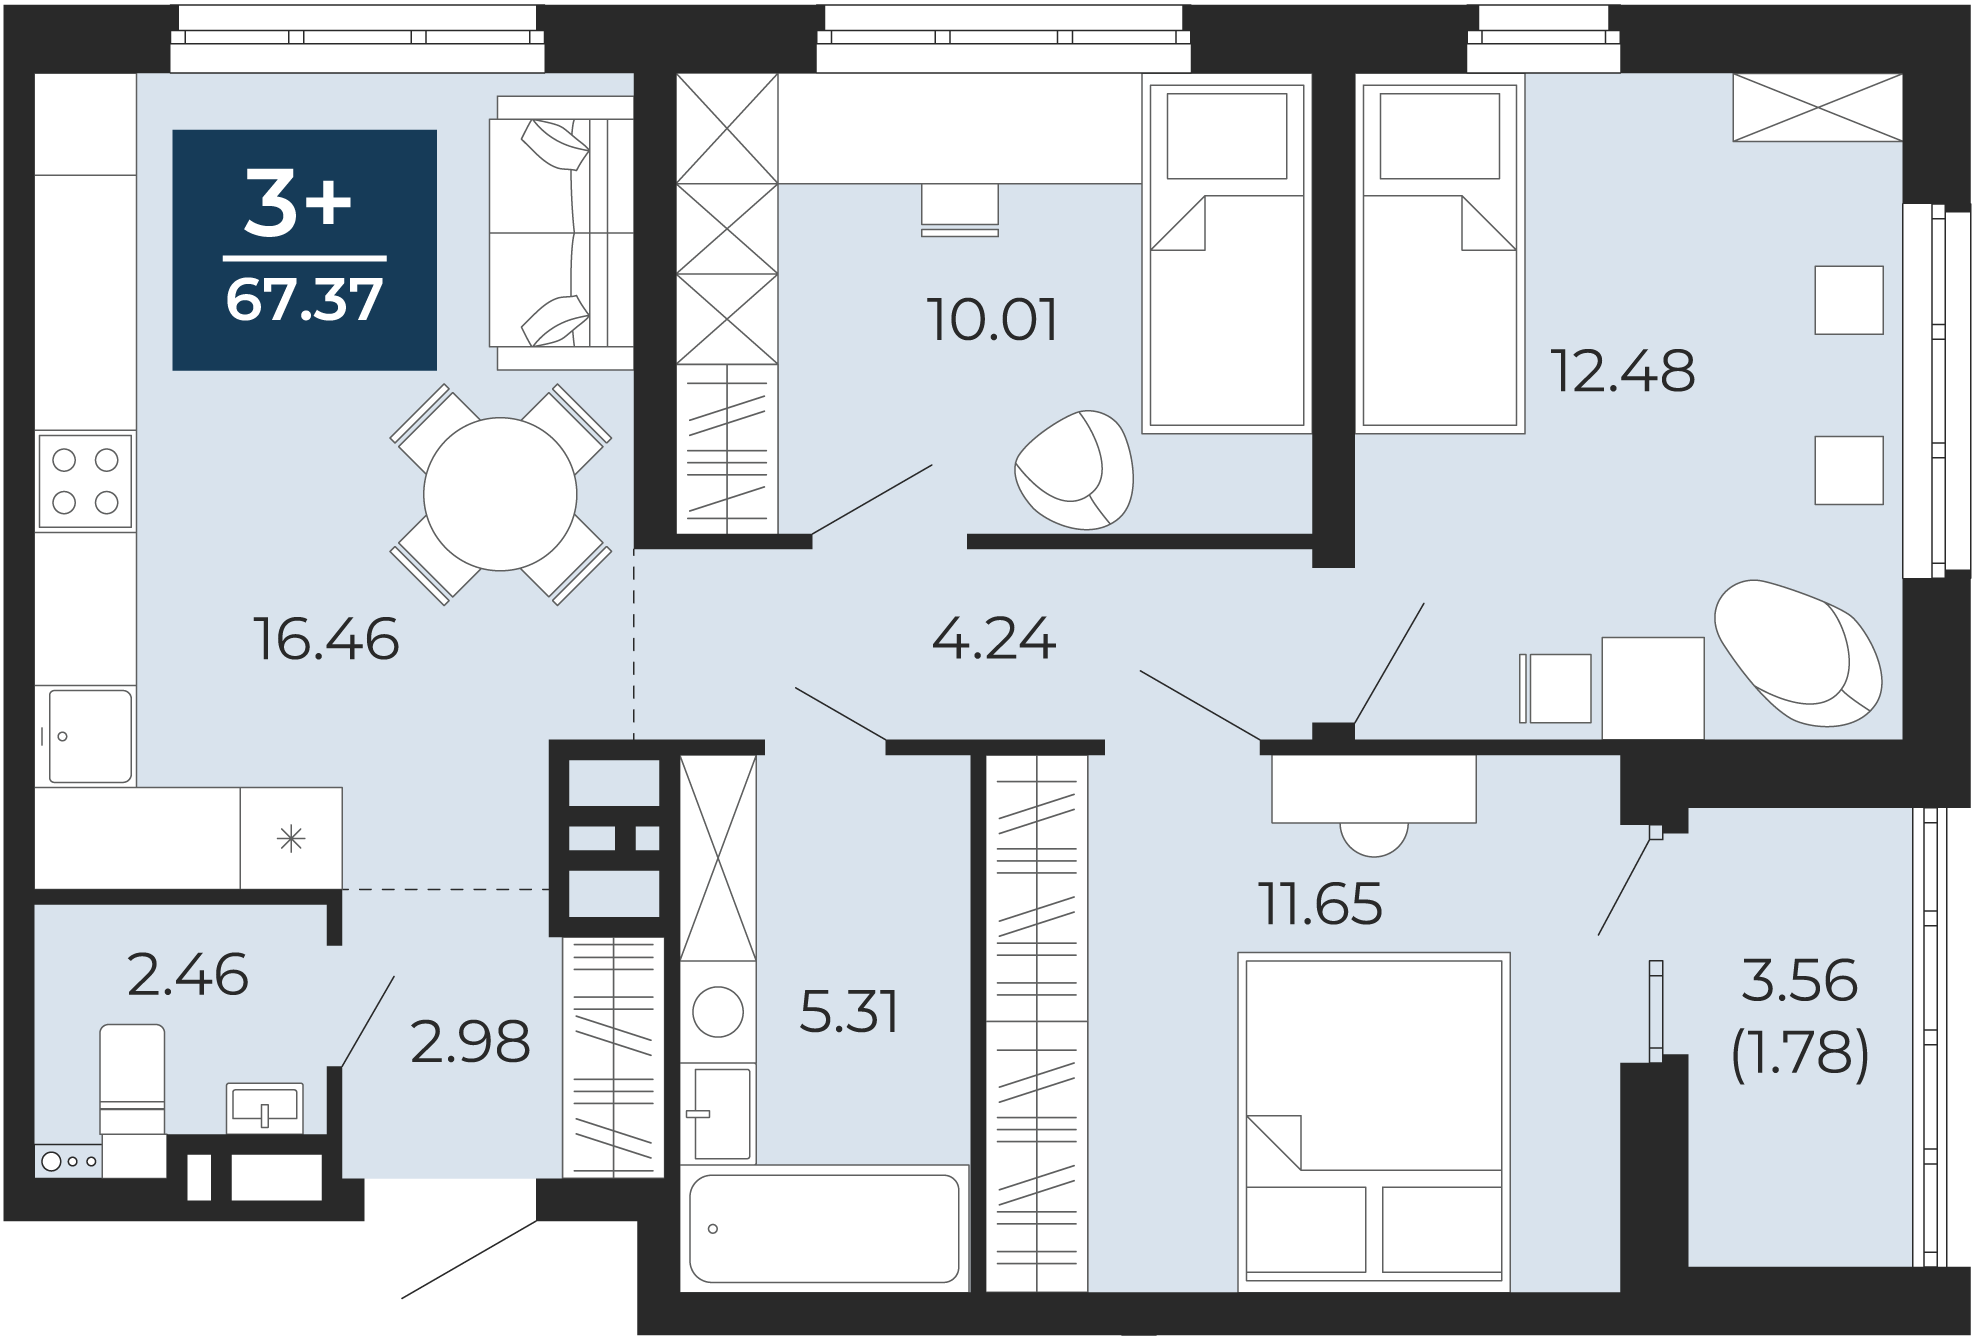 Квартира № 265, 3-комнатная, 67.37 кв. м, 10 этаж